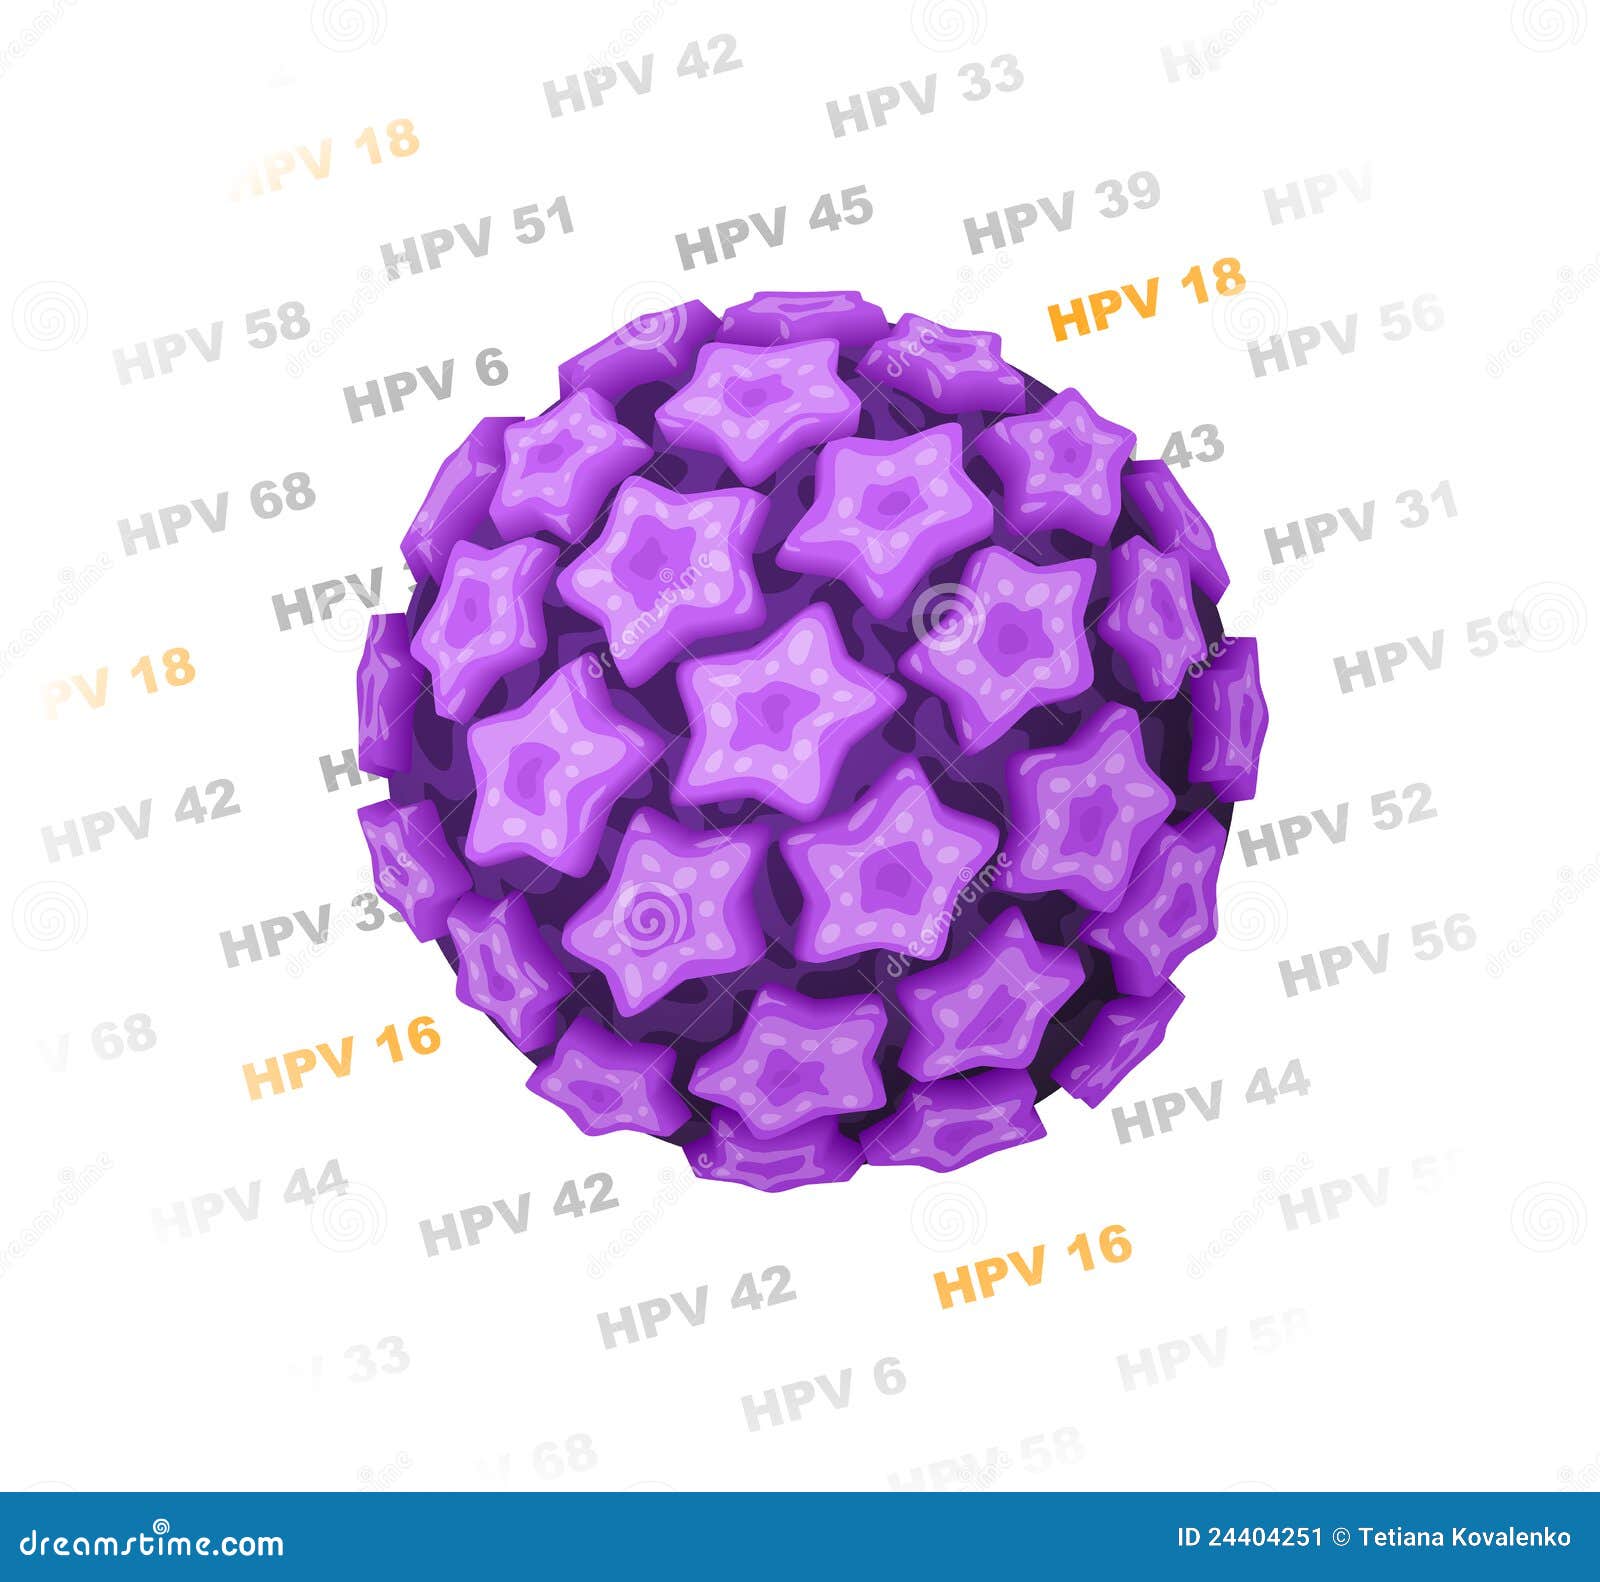 human papillomavirus (hpv)